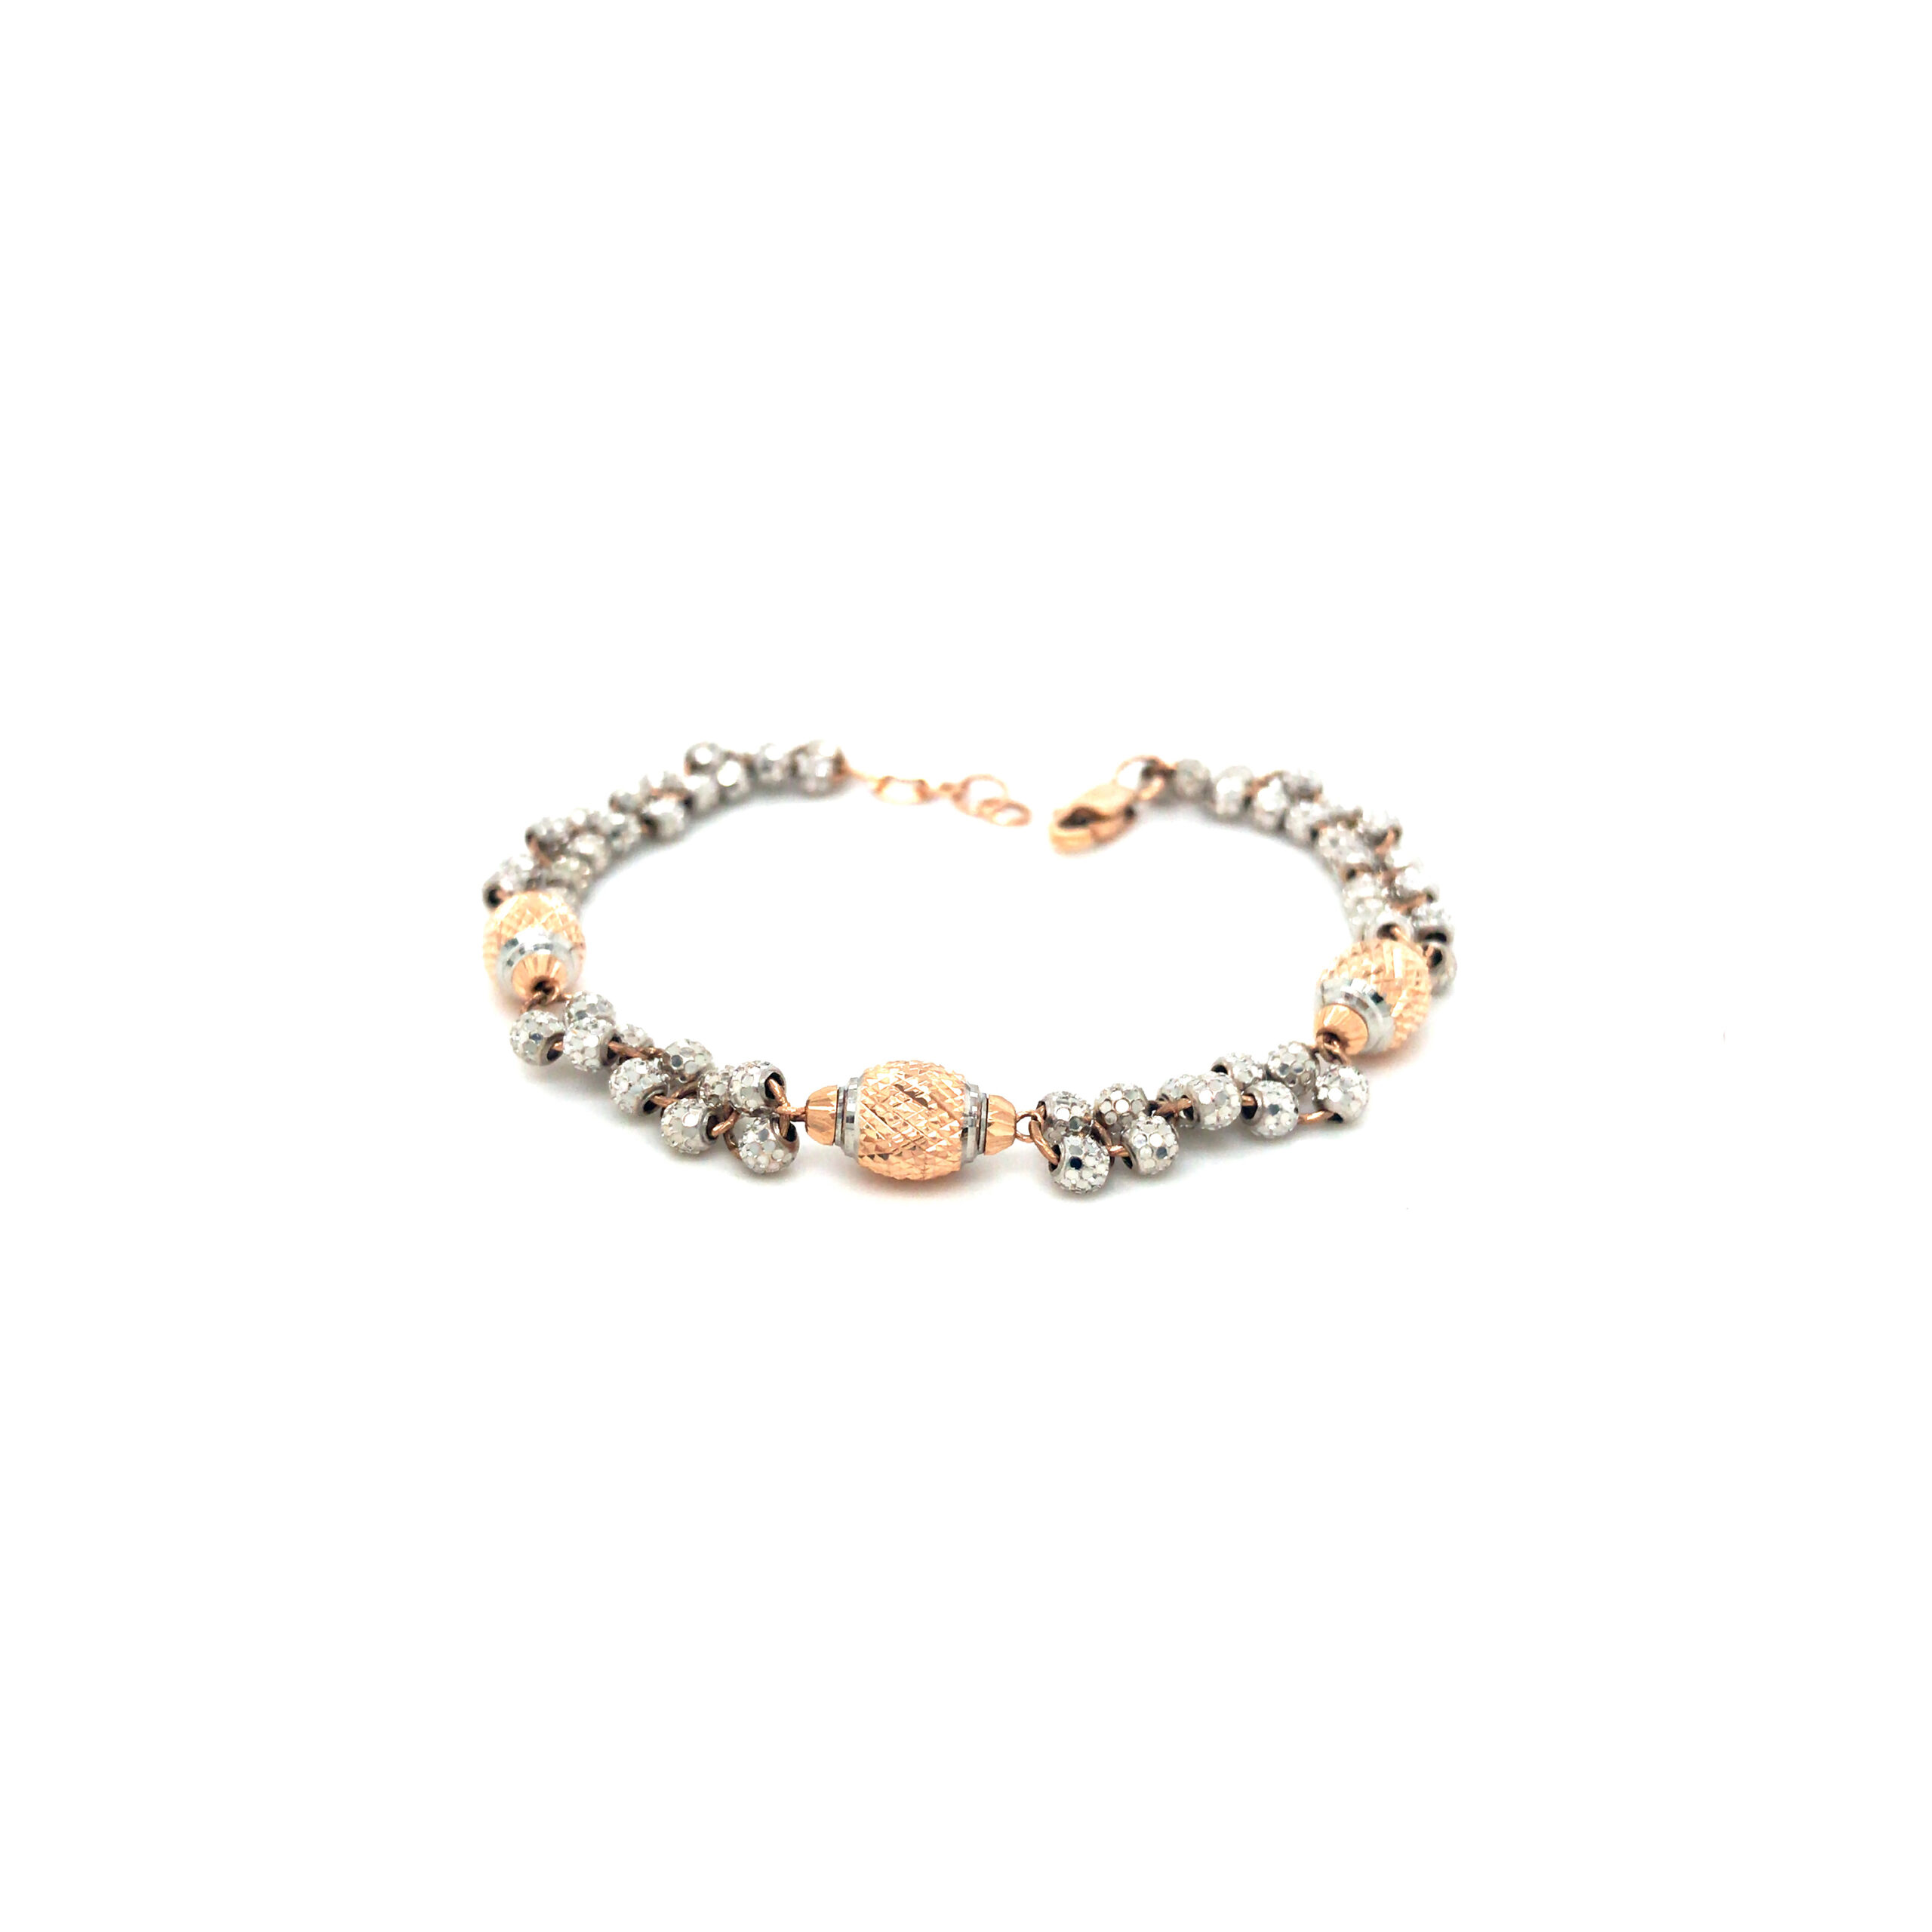 Miriams Jewelry Italian Diamond Bar Stretch Bracelet - Miriams Jewelry